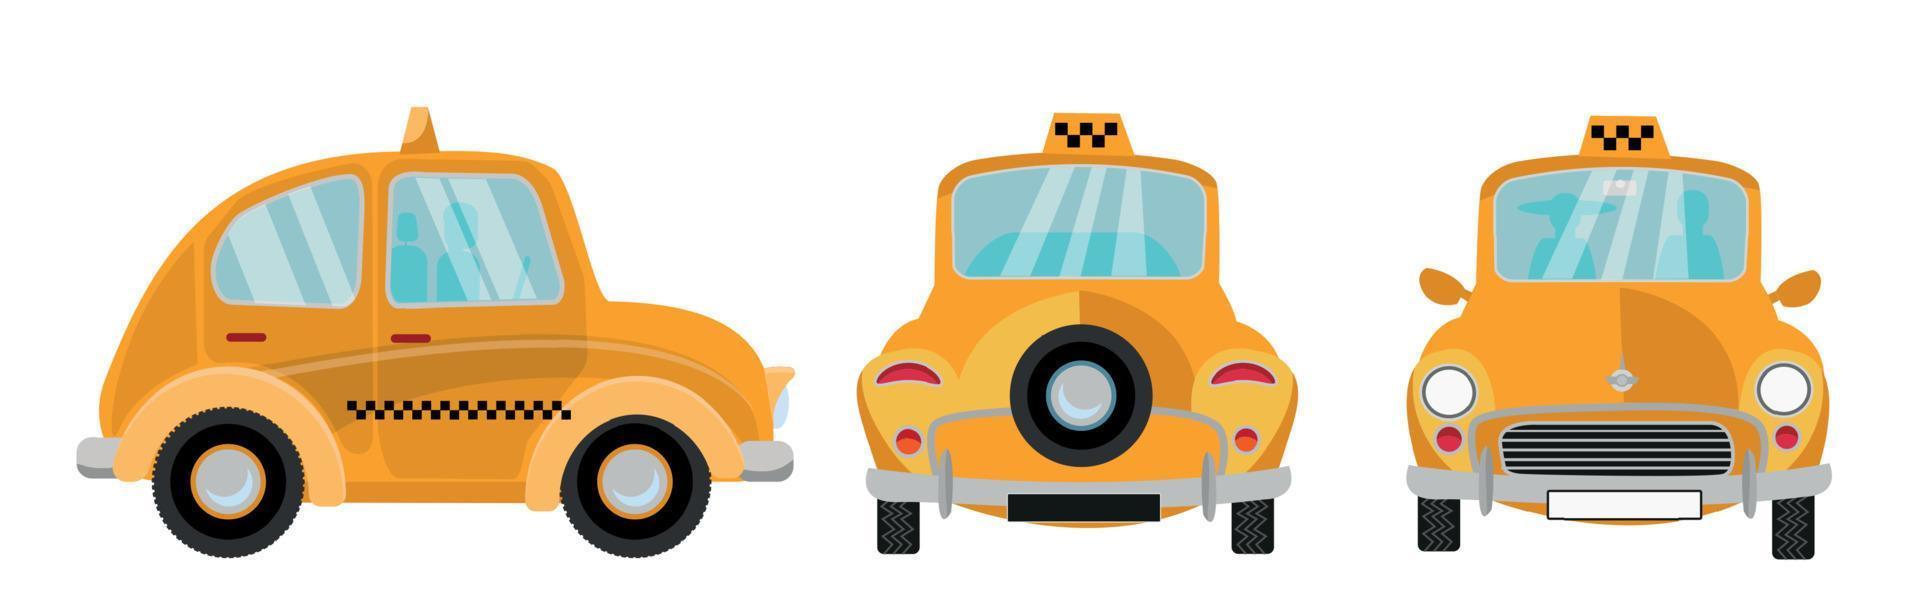 carro de táxi em fundo branco. veículo de cidade bonito retrô amarelo, marca de táxi. conjunto de 3 vistas frontal, traseira e lateral. ilustração em vetor plana isolada dos desenhos animados